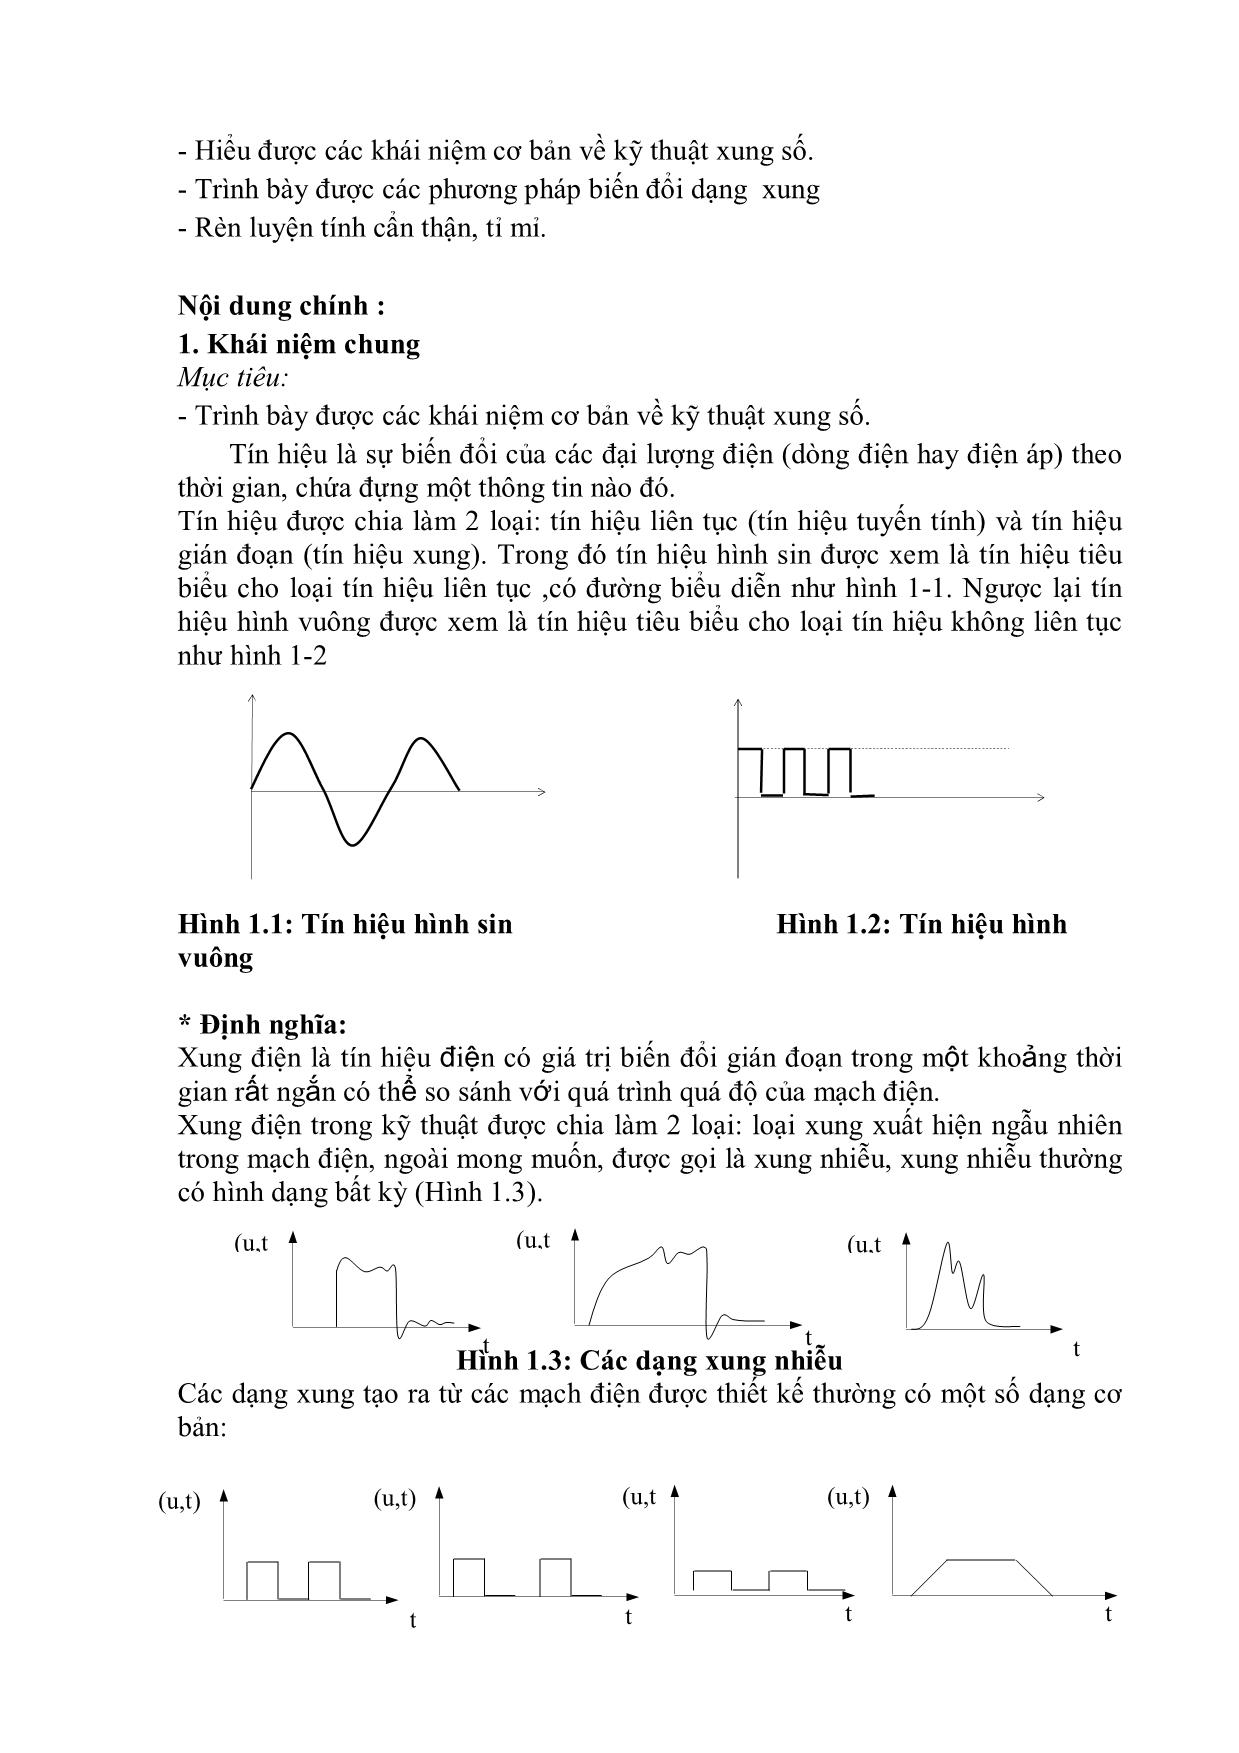 Giáo trình Kỹ thuật xung số - Bài mở đầu: Các khái niệm cơ bản về kỹ thuật xung số trang 6